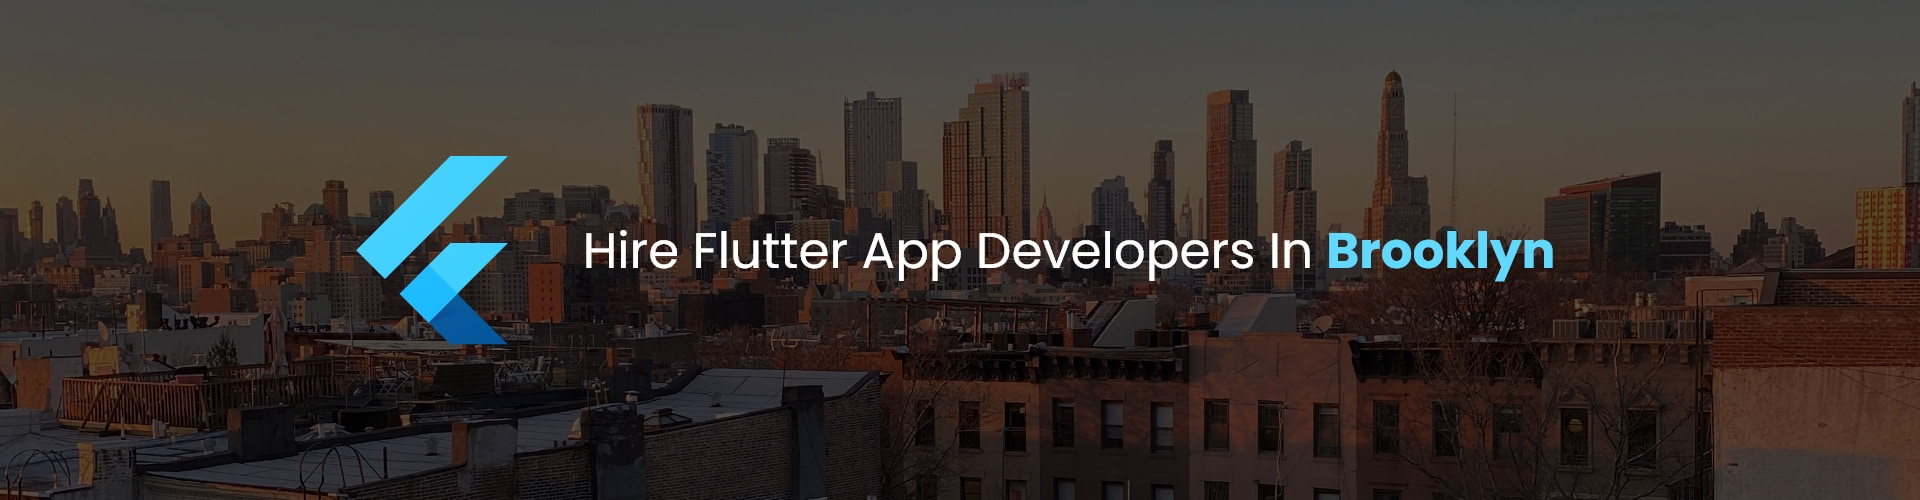 flutter app developers in brooklyn